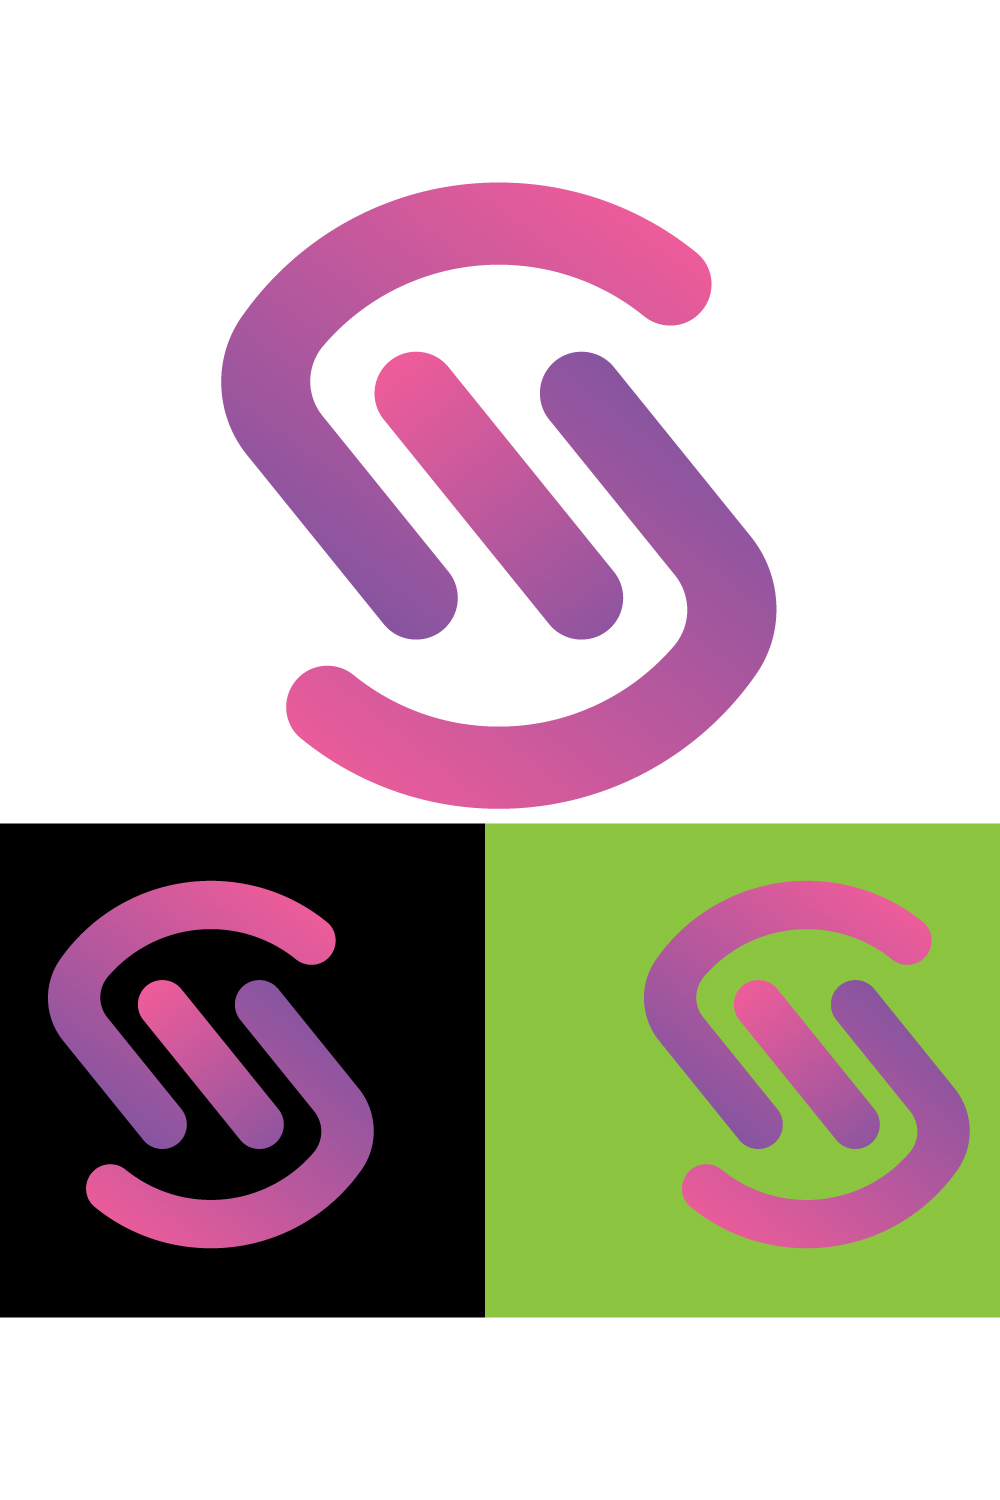 S logo design SVG/EPS/PNG pinterest preview image.